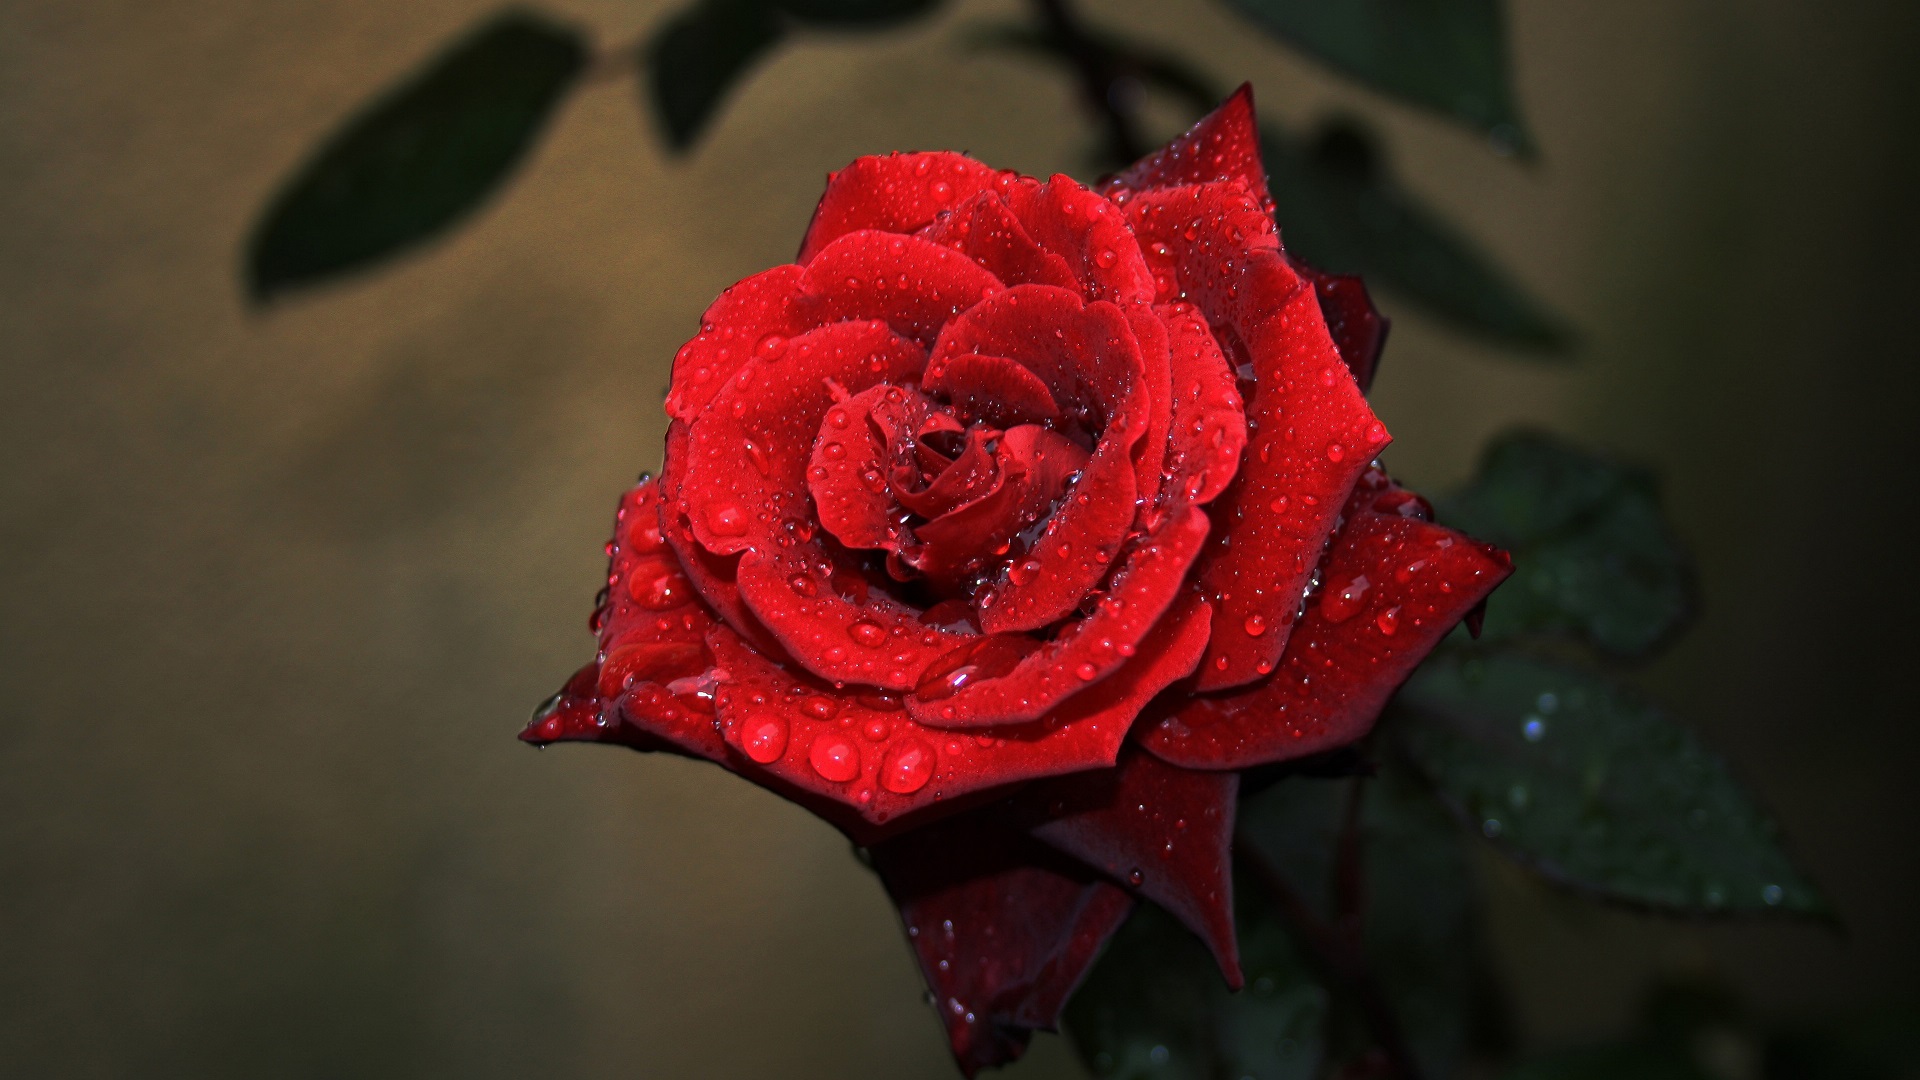 图集:分享一组高清的红玫瑰壁纸,欢迎收藏!